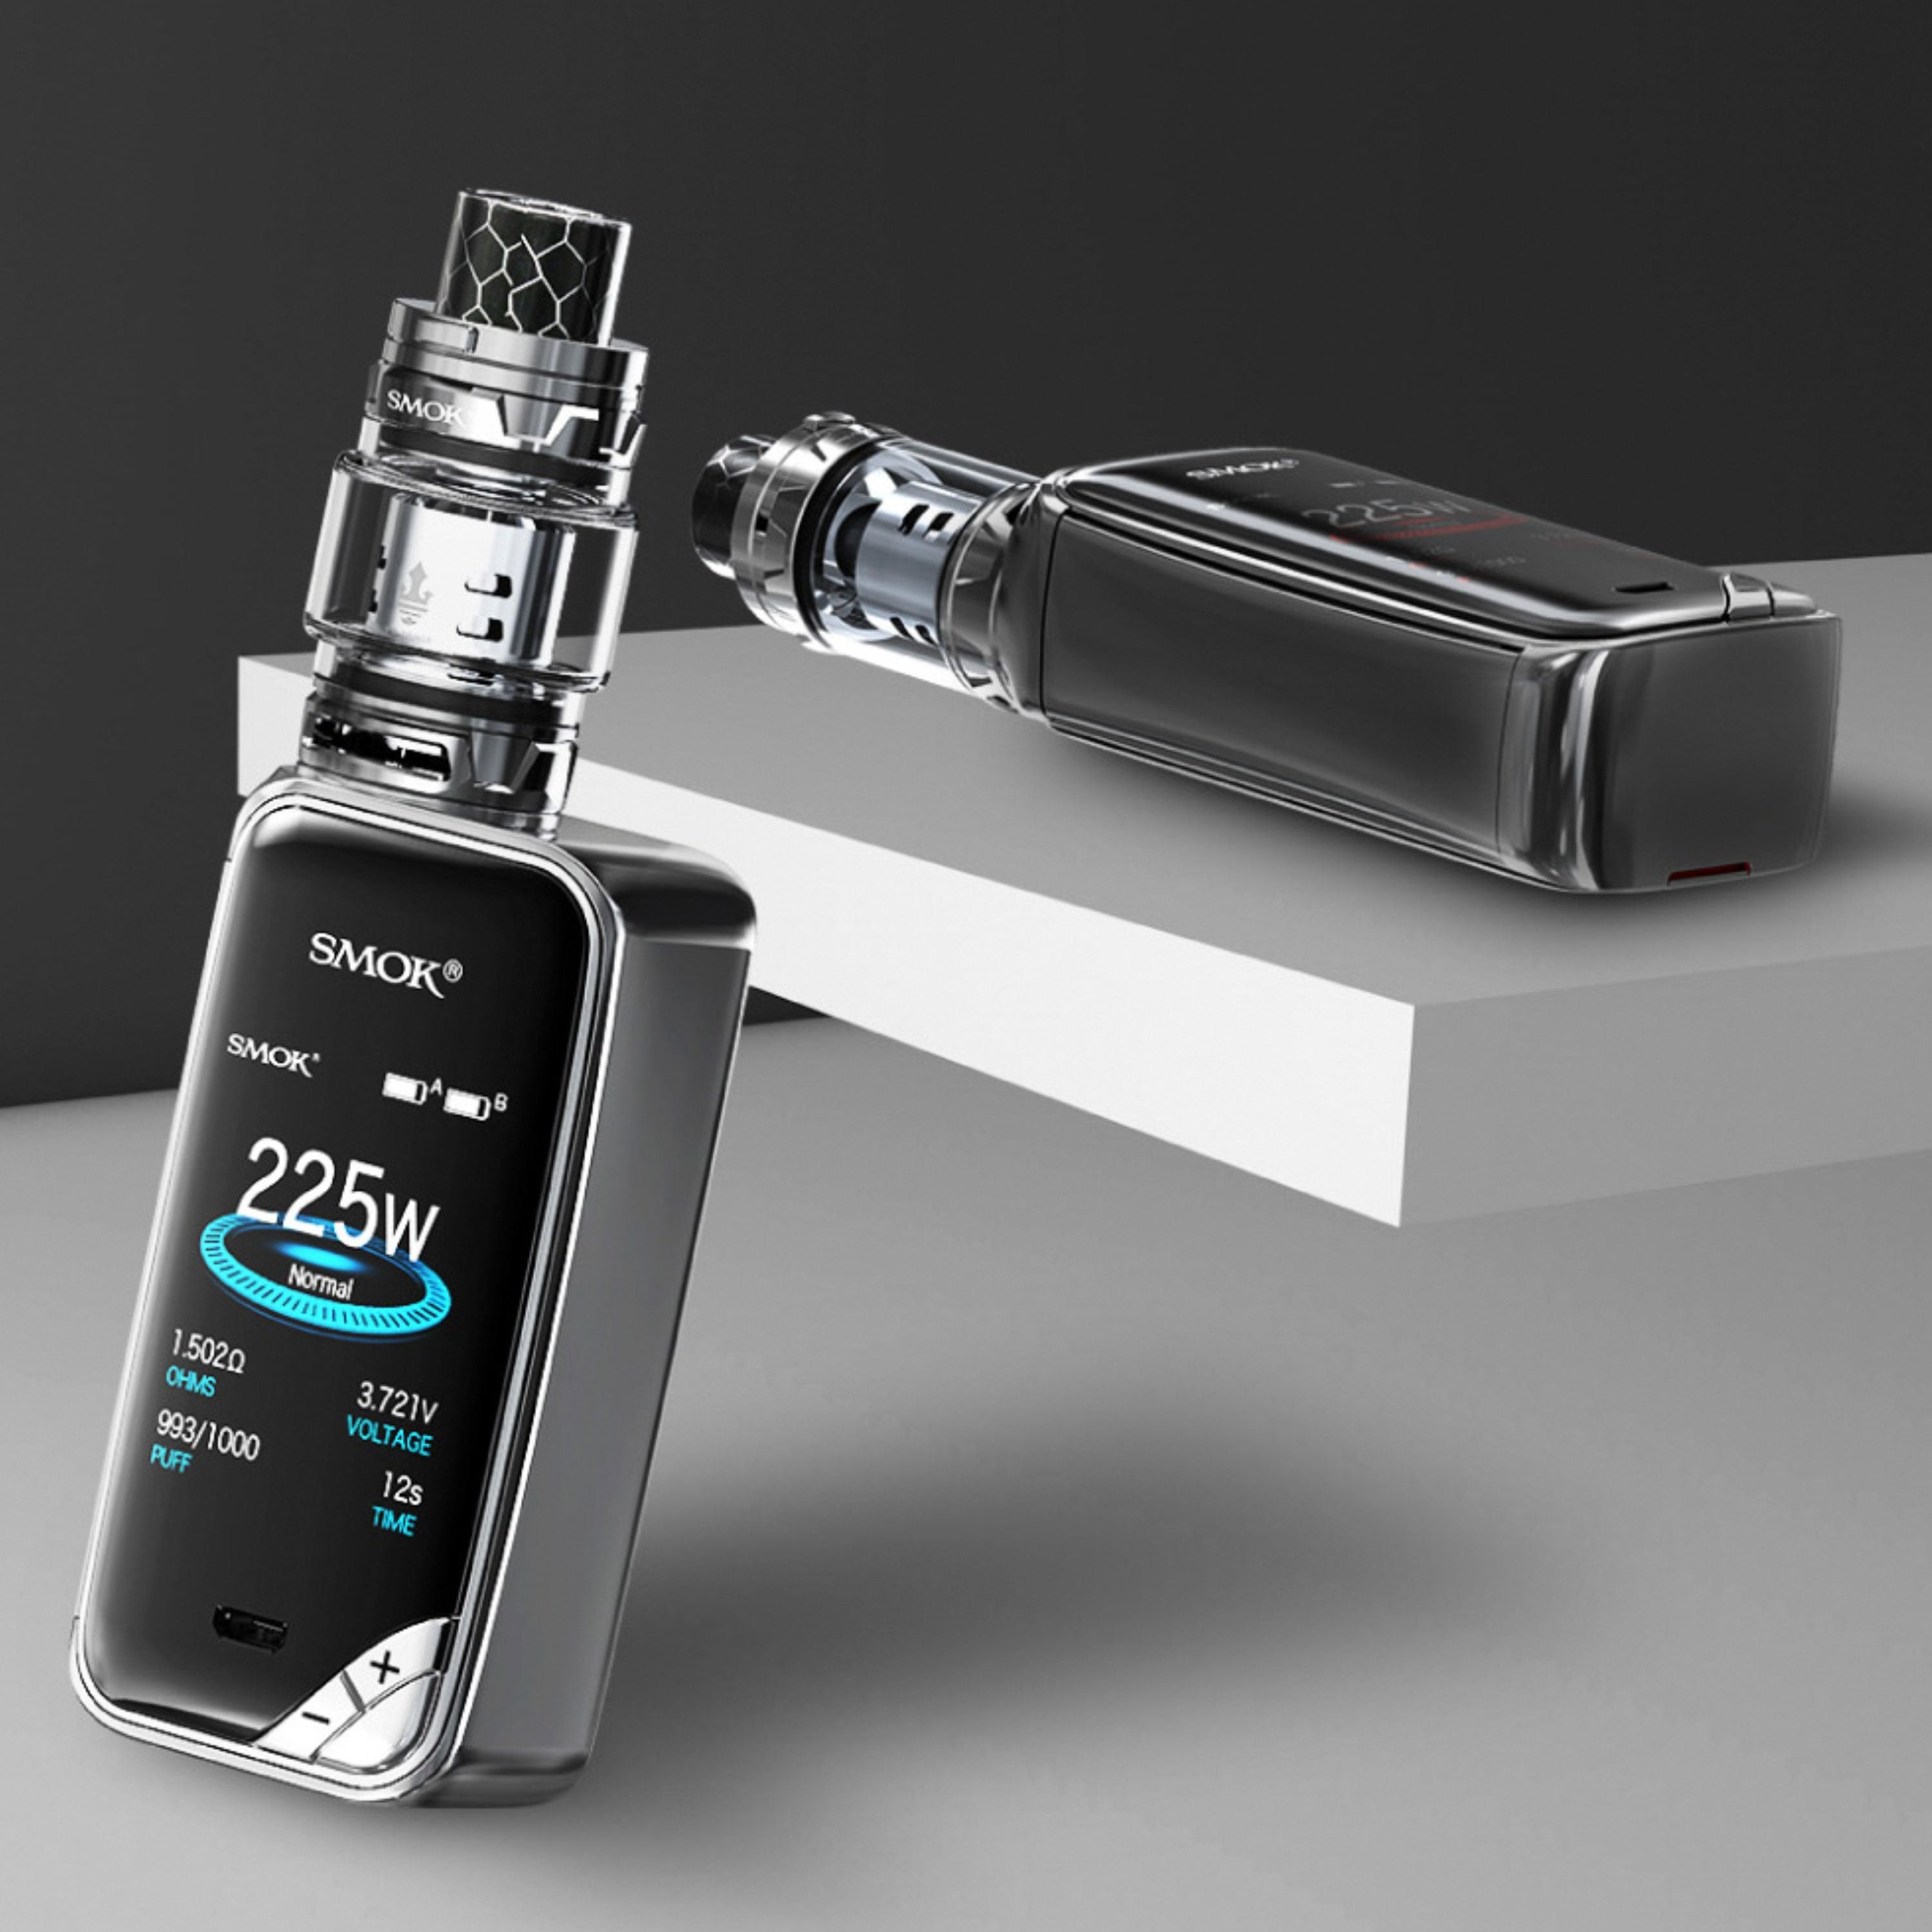 Smok - X-Priv Kit inkl. TFV12 Prince (8 ml) - E-Zigarette (gebraucht)